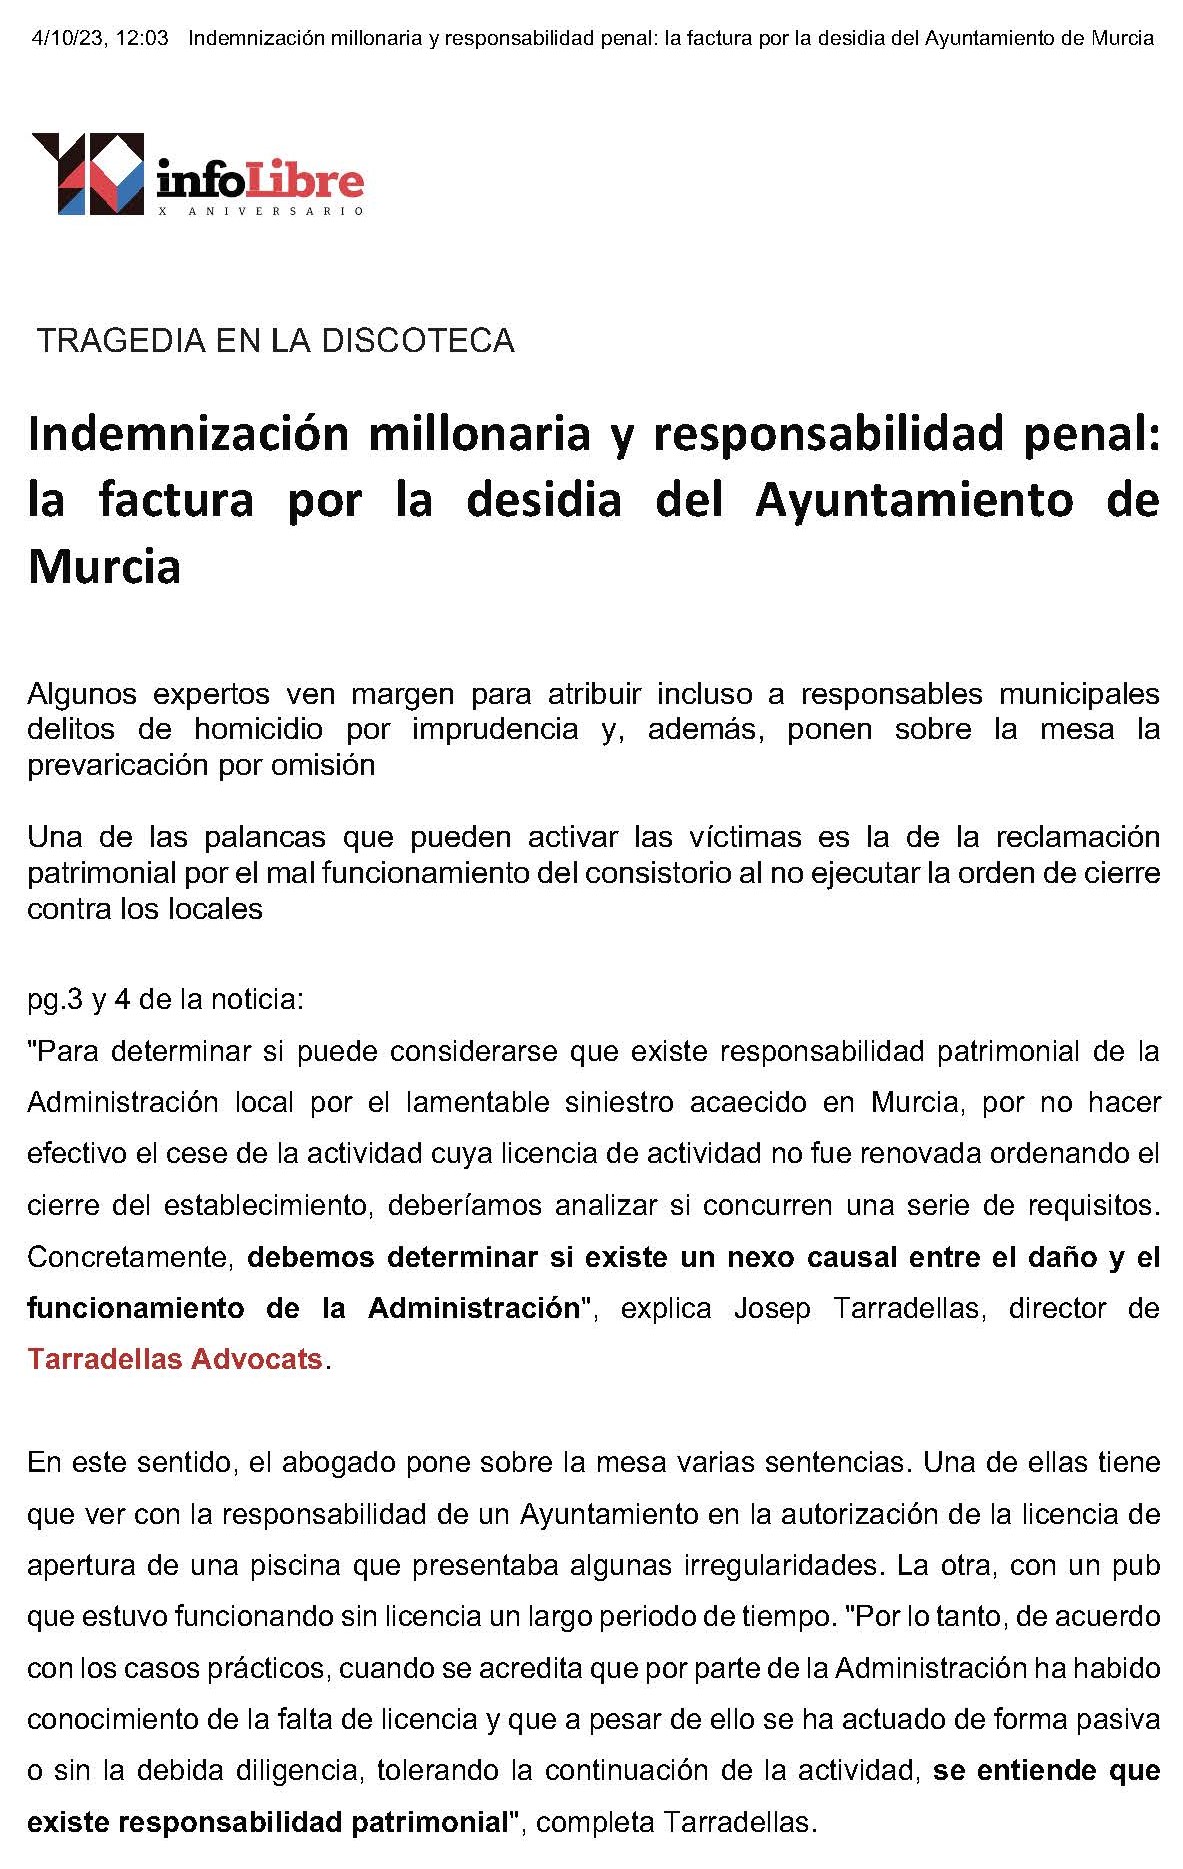 Tragedia en Murcia. El periódico digital infolibre nos consulta como expertos en responsabilidad parimonial.